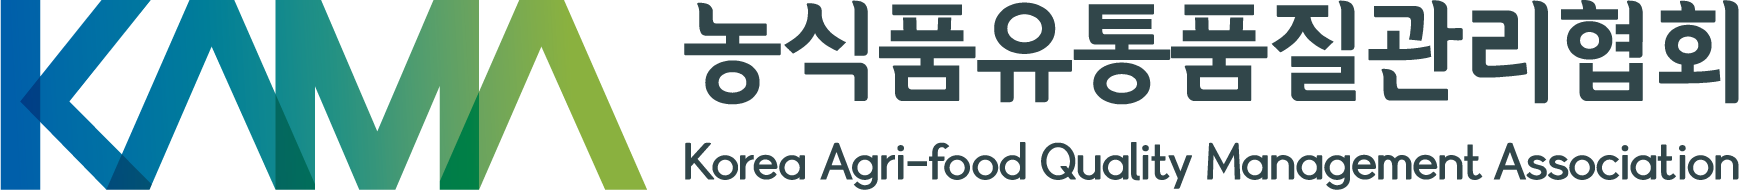 (사)한국농식품유통품질관리협회의 기업로고